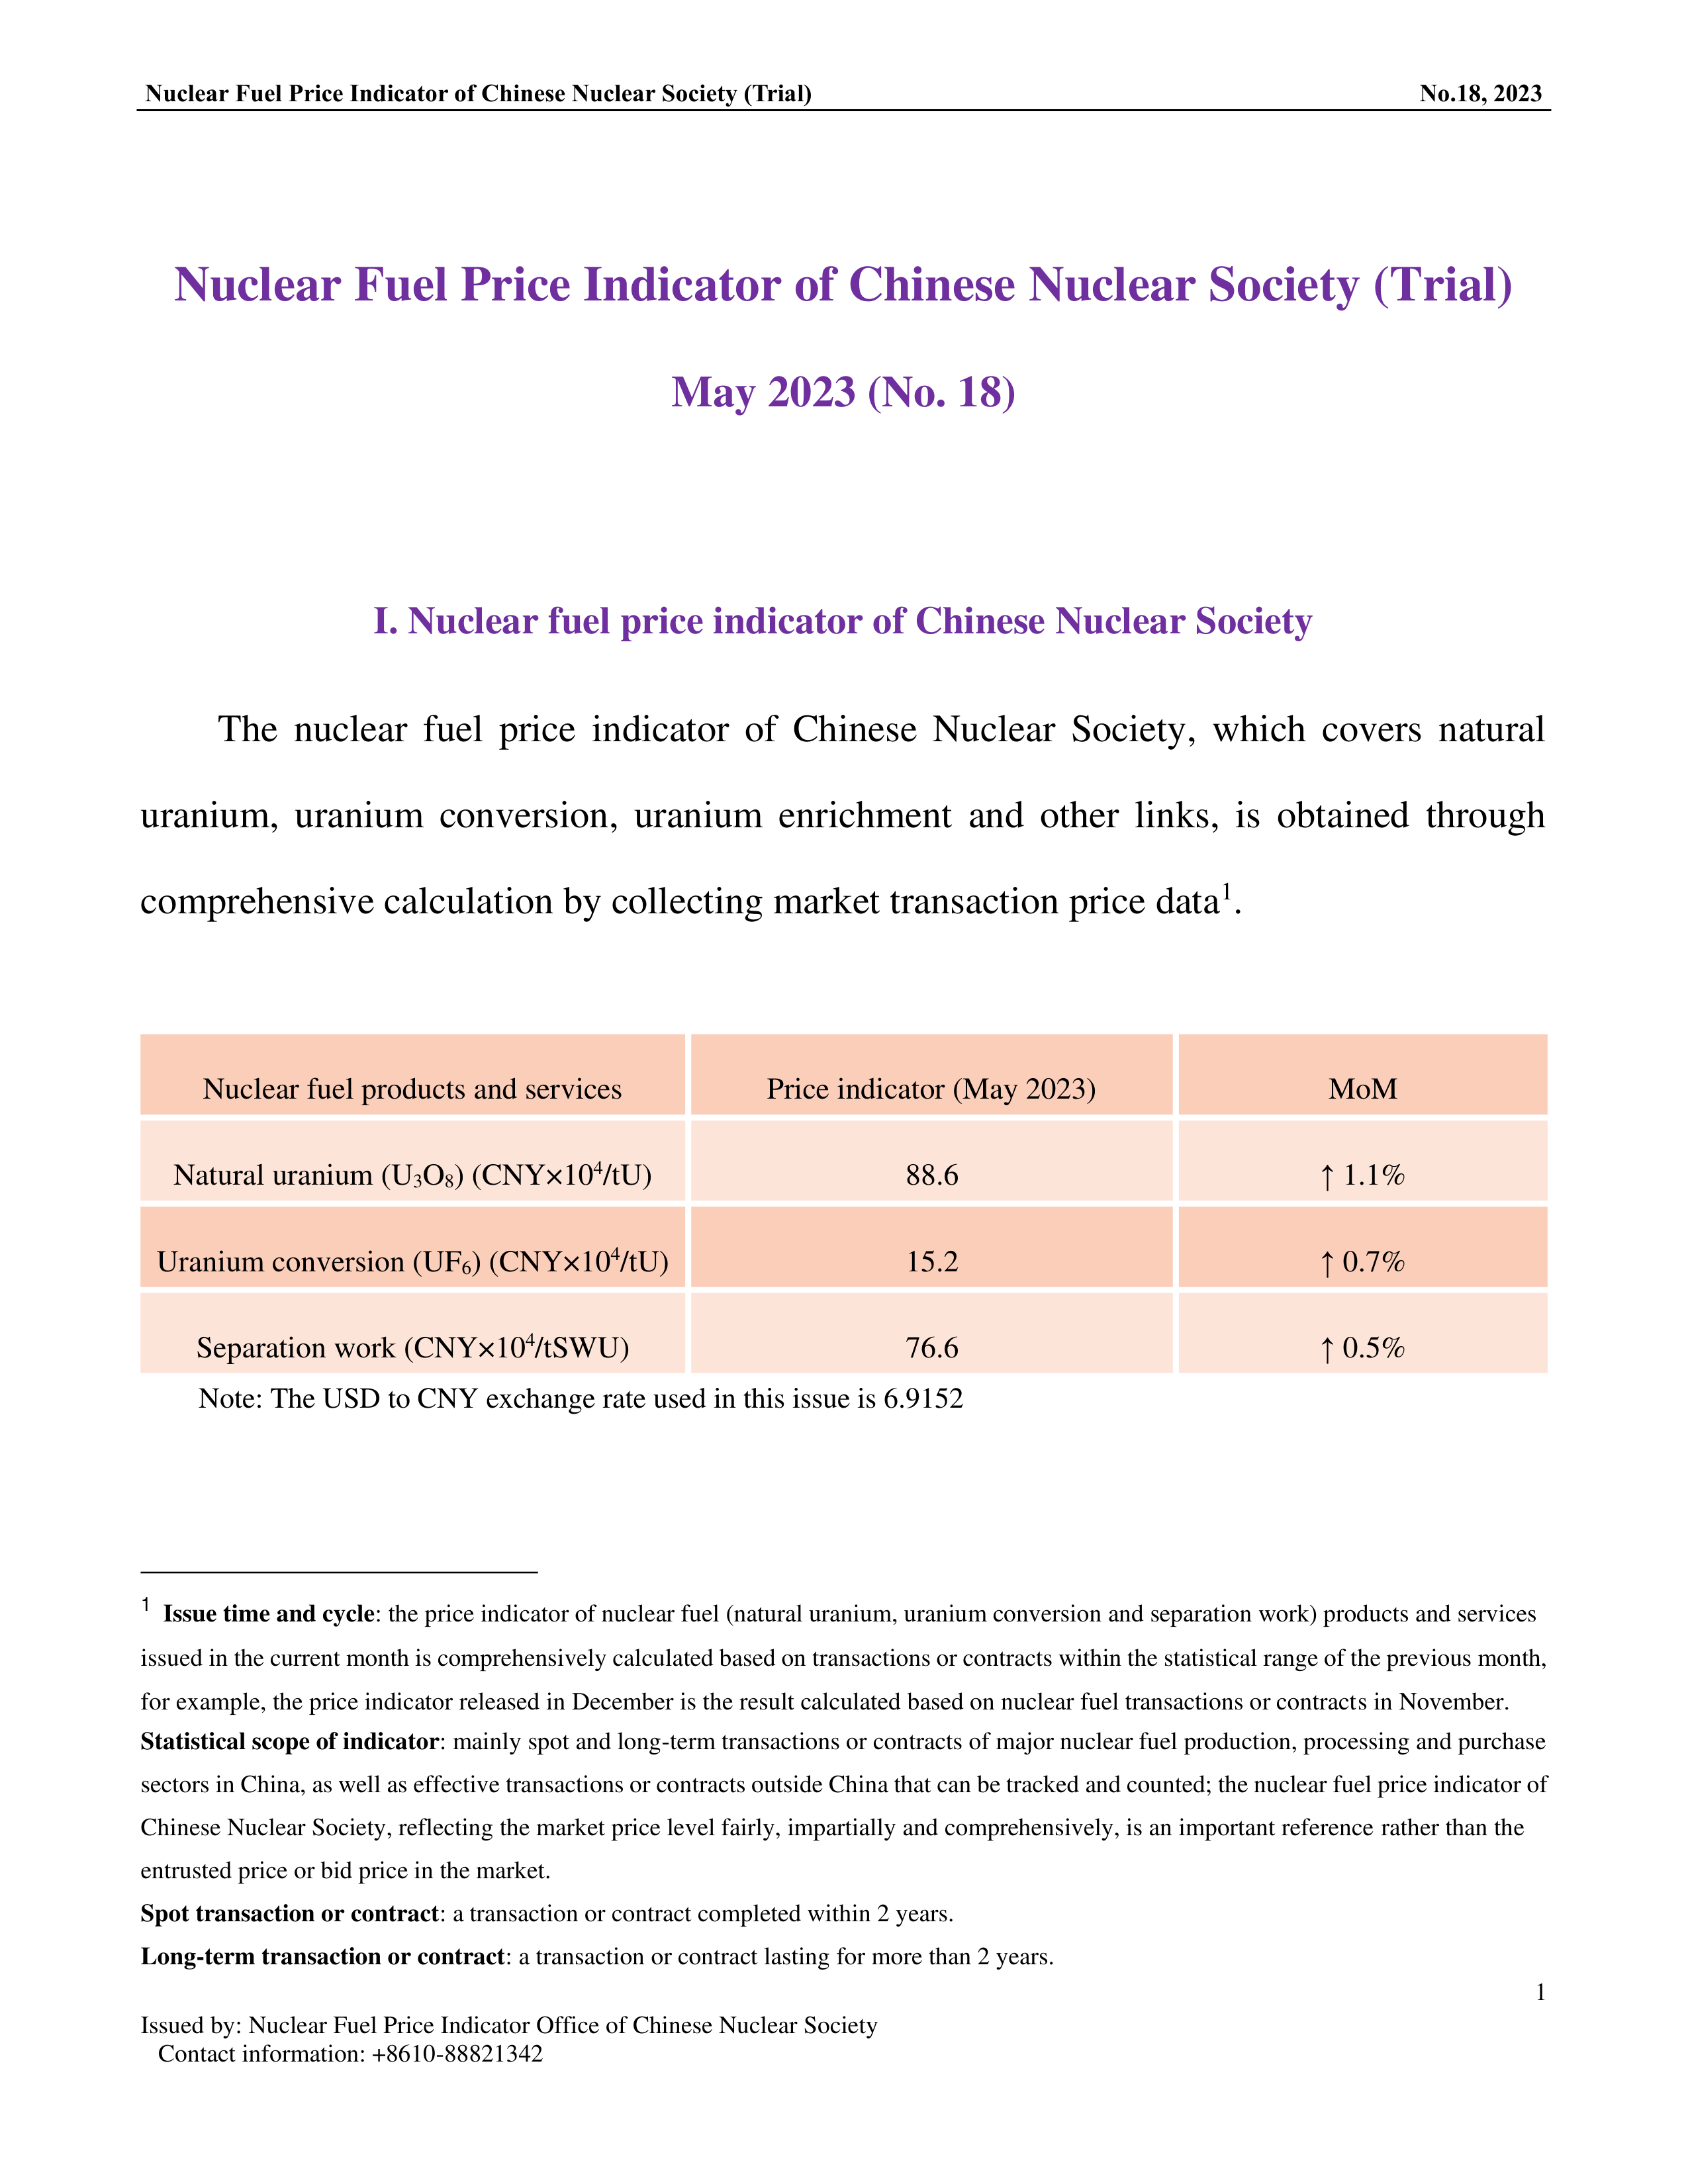 中国核学会核燃料价格指数(试运行)（2023年5月,总第18期）-终稿_EN-1.png